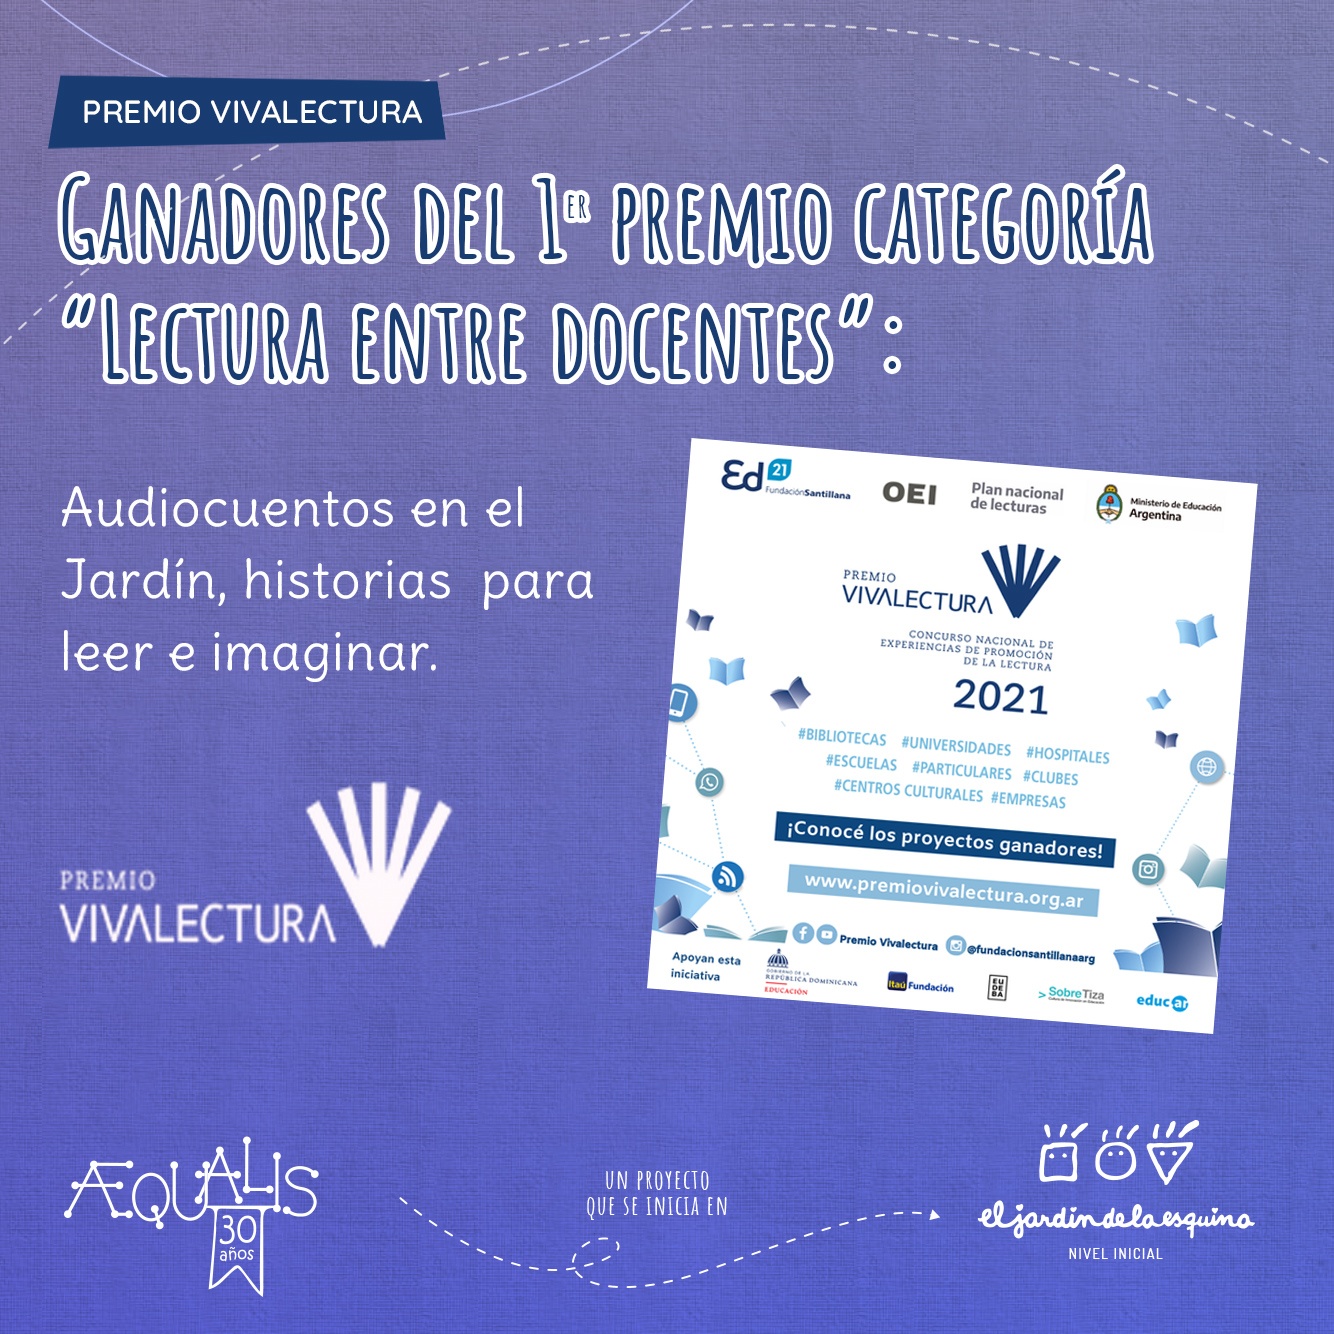 Primer Premio en VIVALECTURA: Audiocuentos en el Jardín, historias para escuchar a imaginar